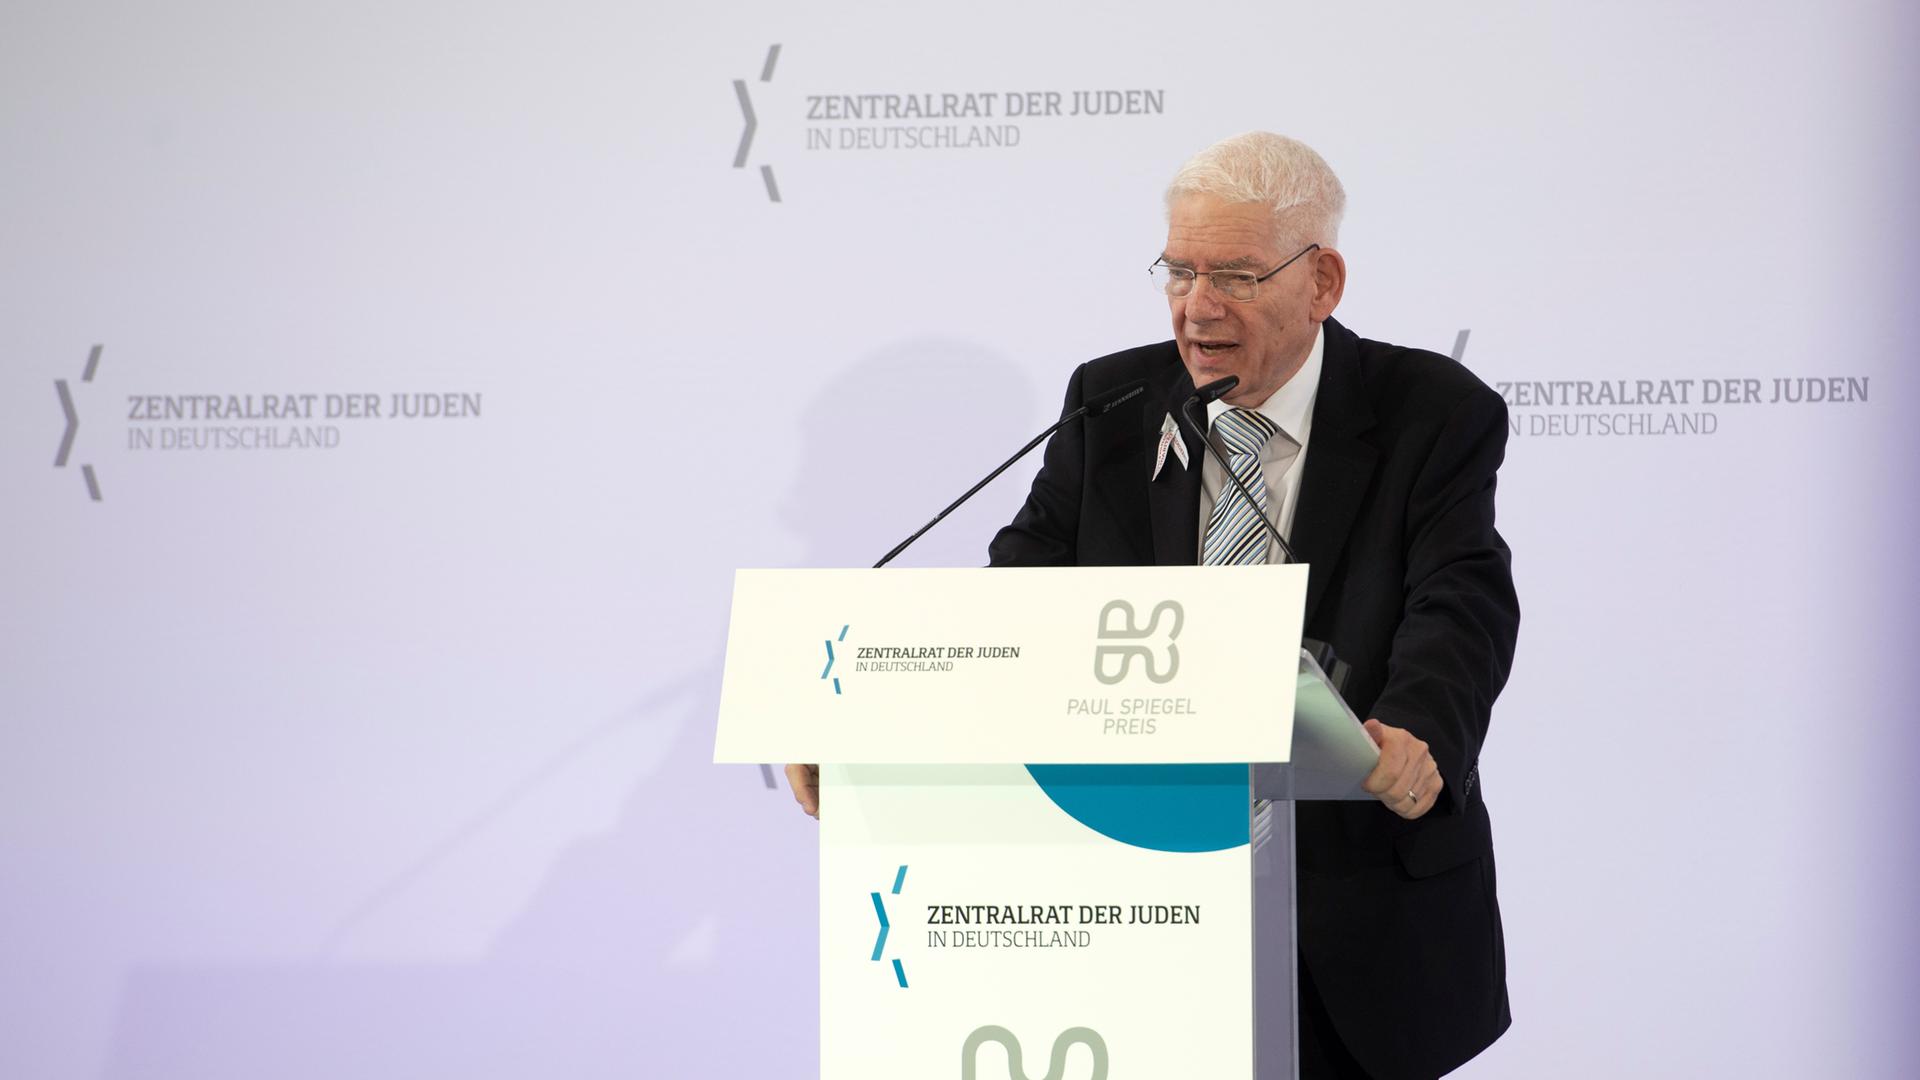 Josef Schuster, Präsident des Zentralrates der Juden, spricht bei der Feier zur Verleihung des Paul-Spiegel-Preises.